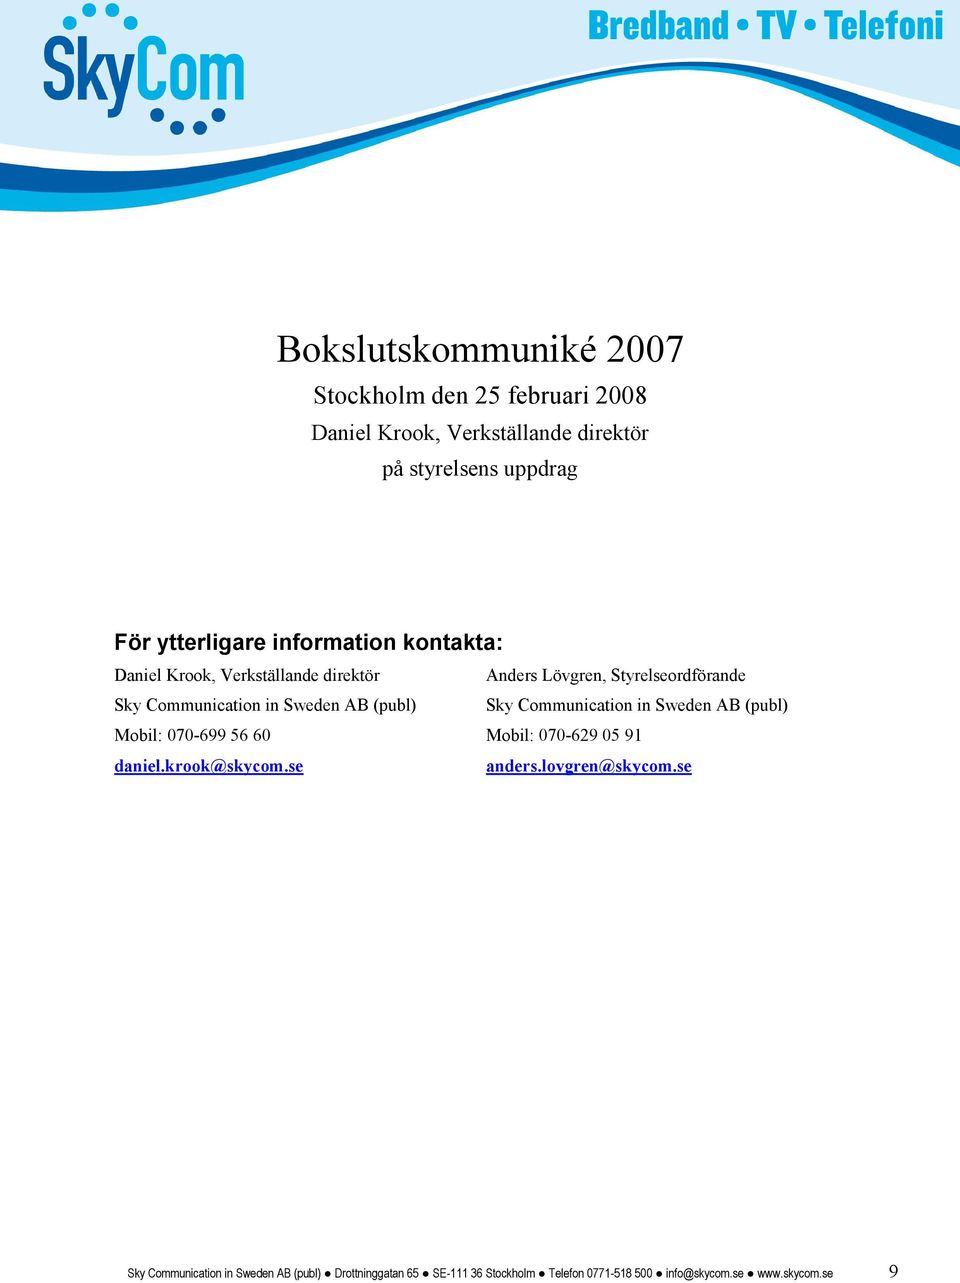 (publ) Sky Communication in Sweden AB (publ) Mobil: 070-699 56 60 Mobil: 070-629 05 91 daniel.krook@skycom.se anders.